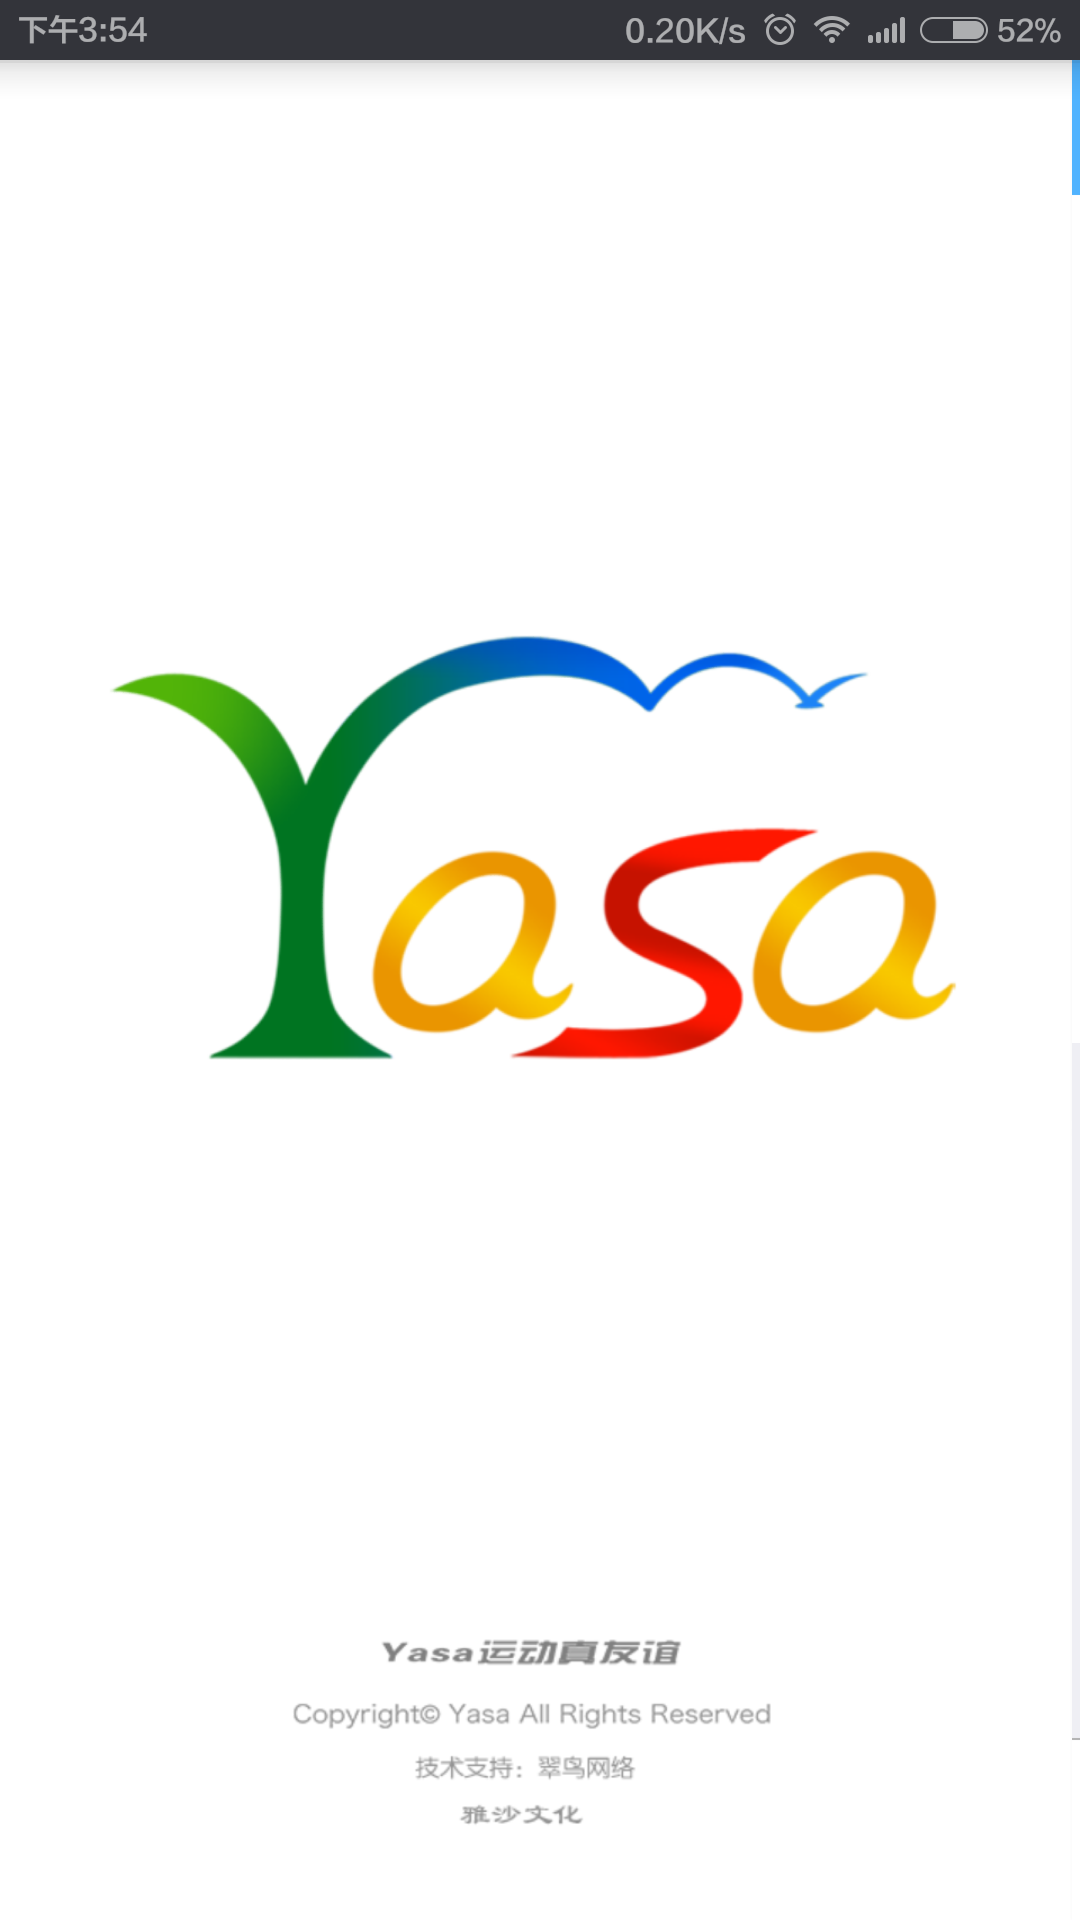 Yasa